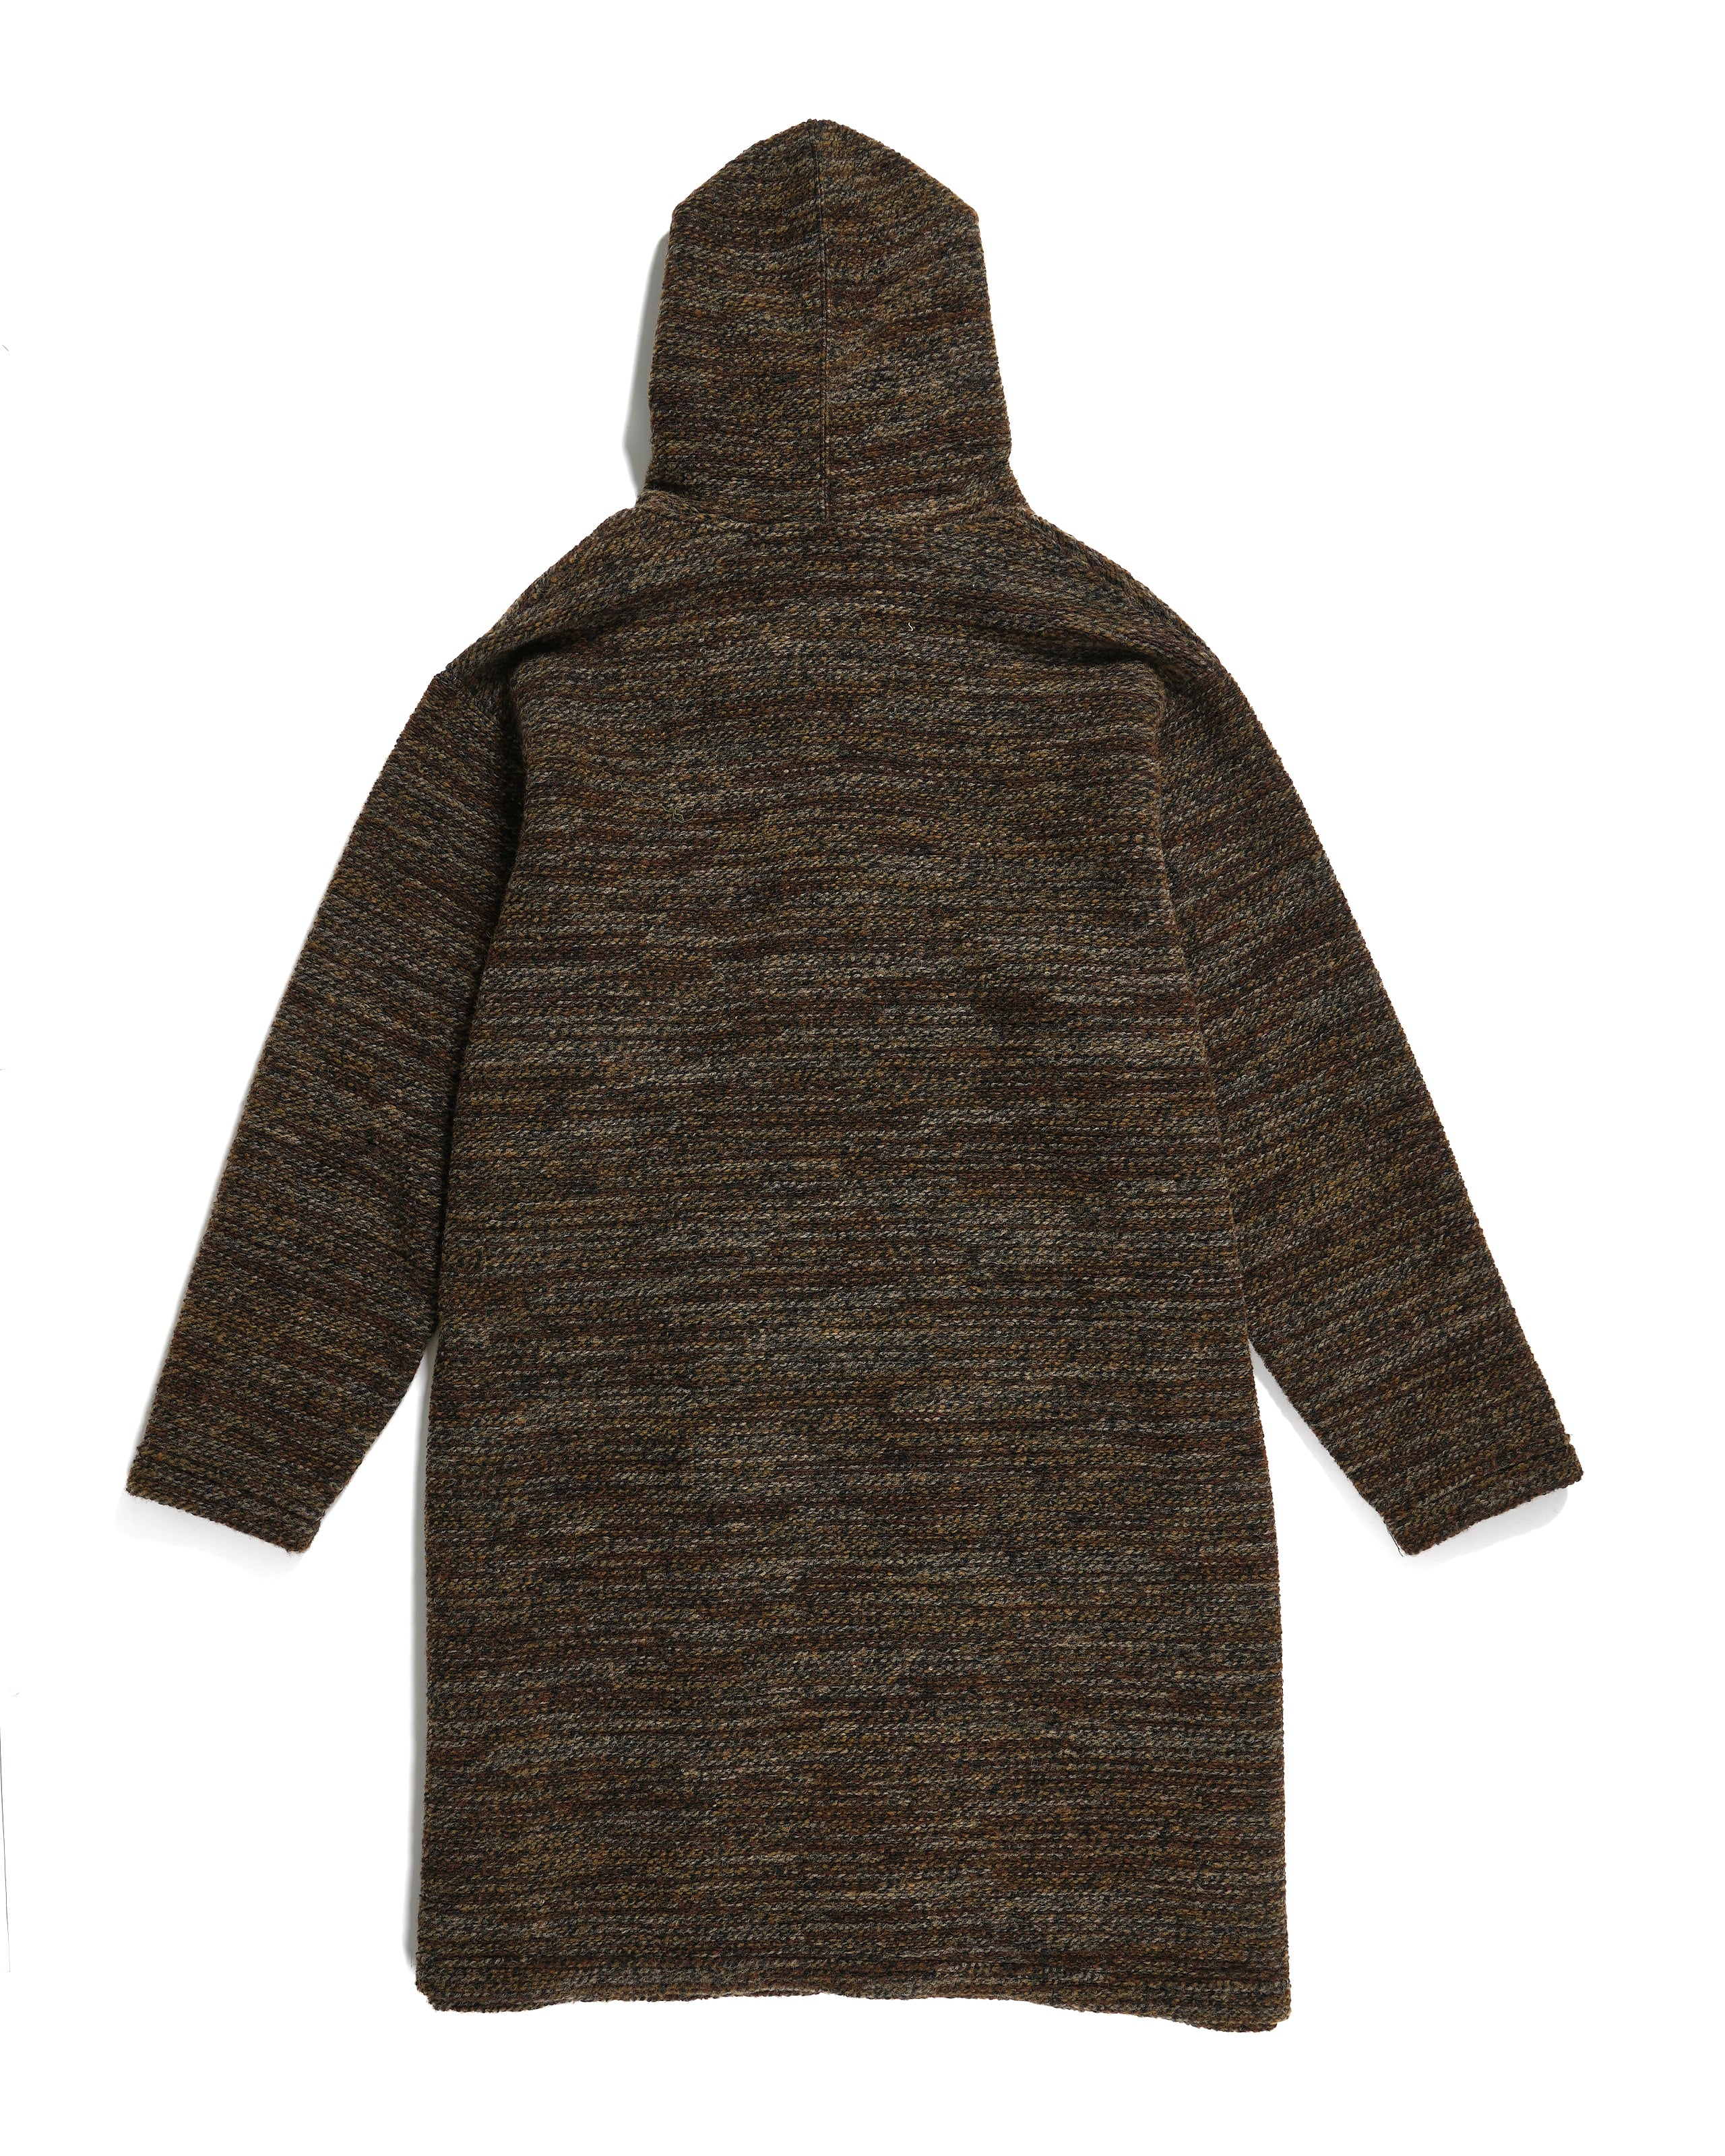 Knit Robe - Brown Poly Wool Melange Knit